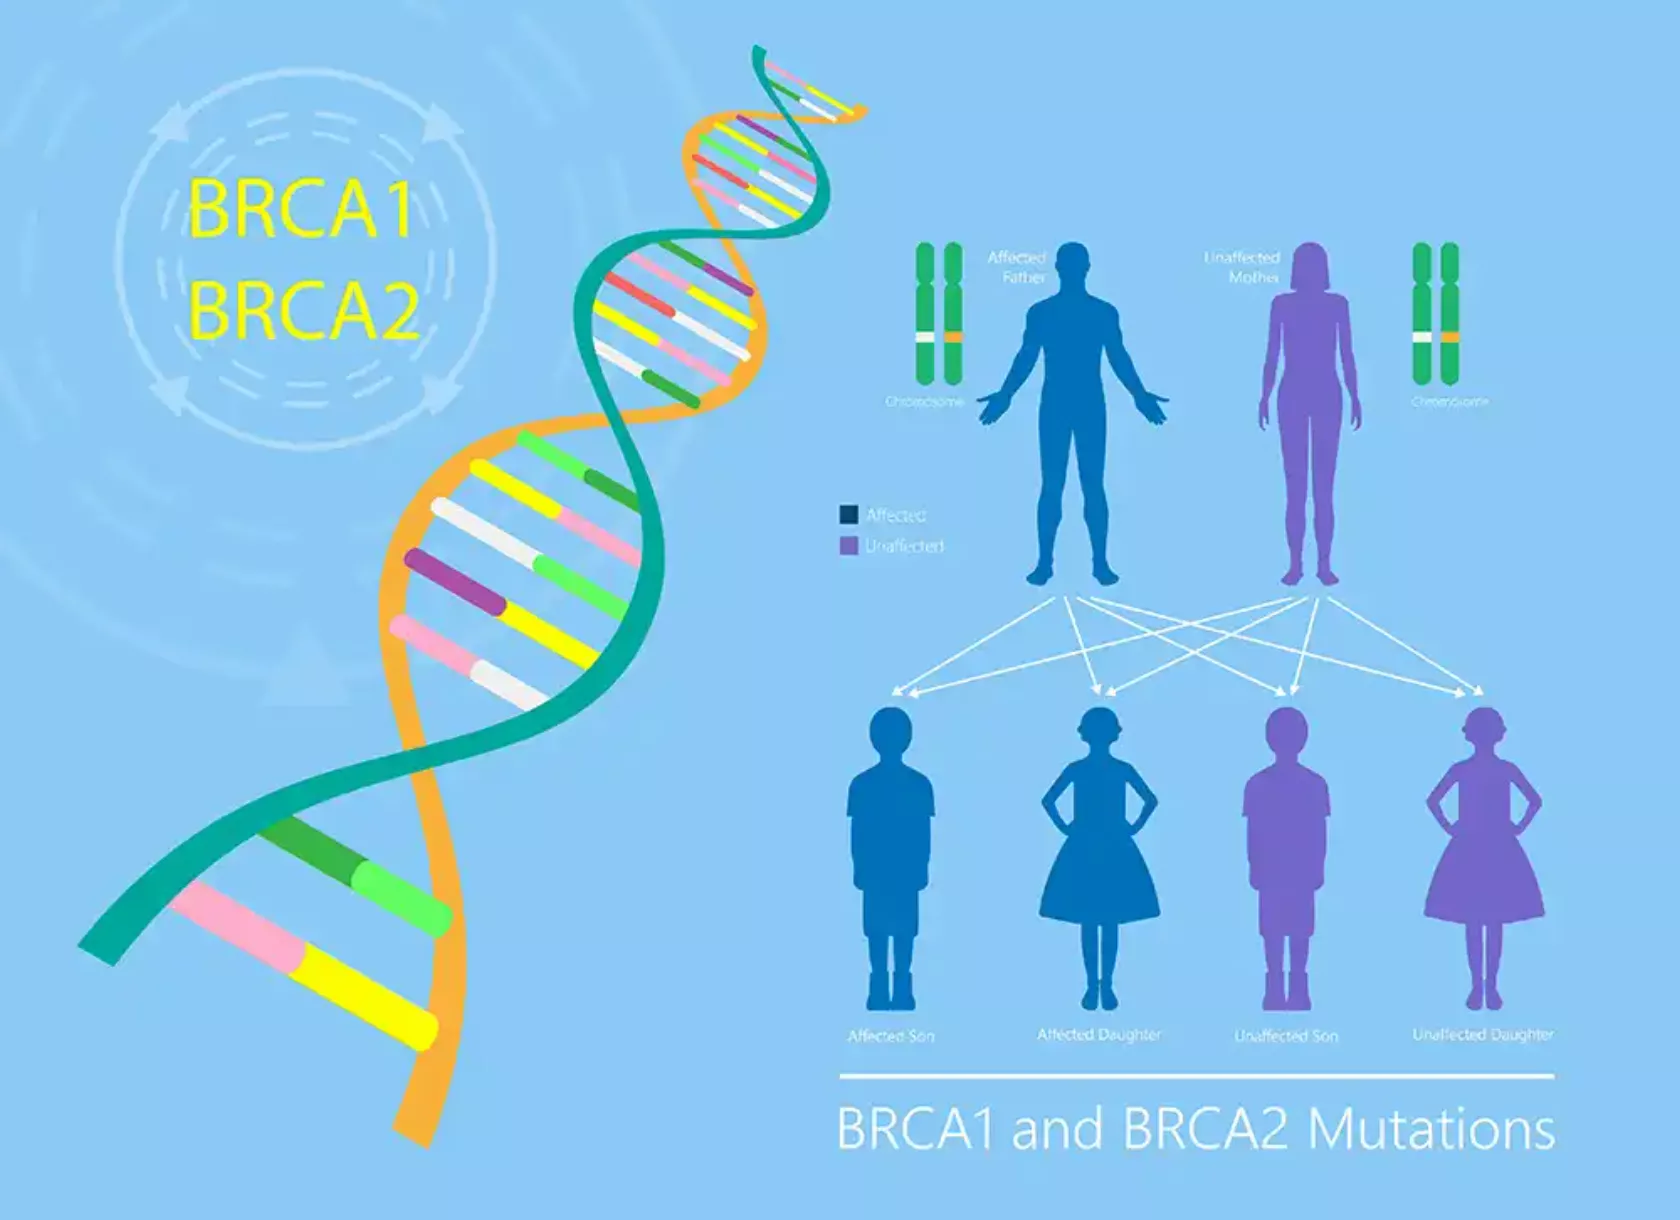 Schaubild zur Vererbung von BRCA1 und 2 mit Gen-Doppelhelix und Generationen.